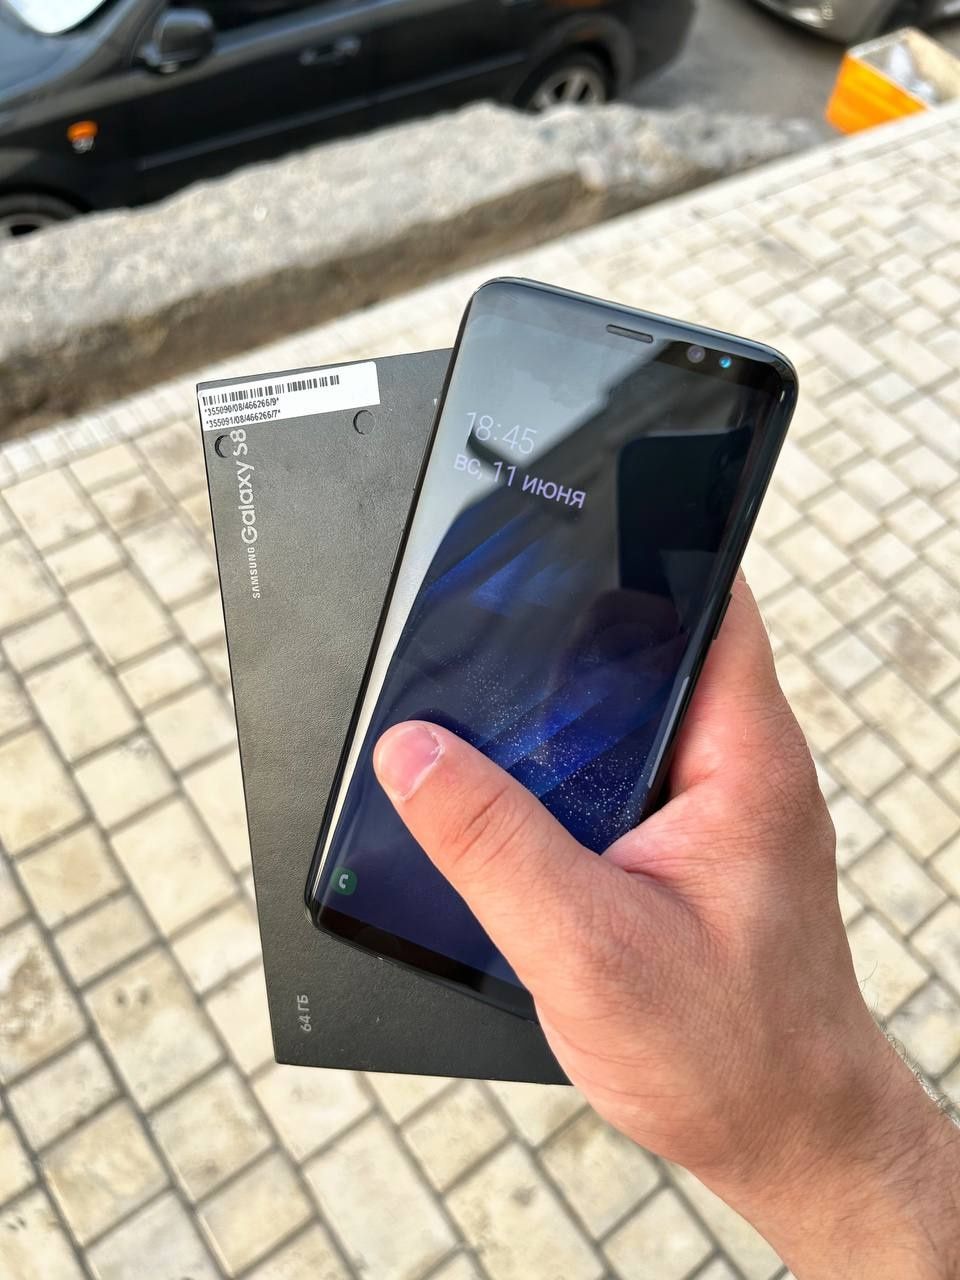 Samsung S8 plyus